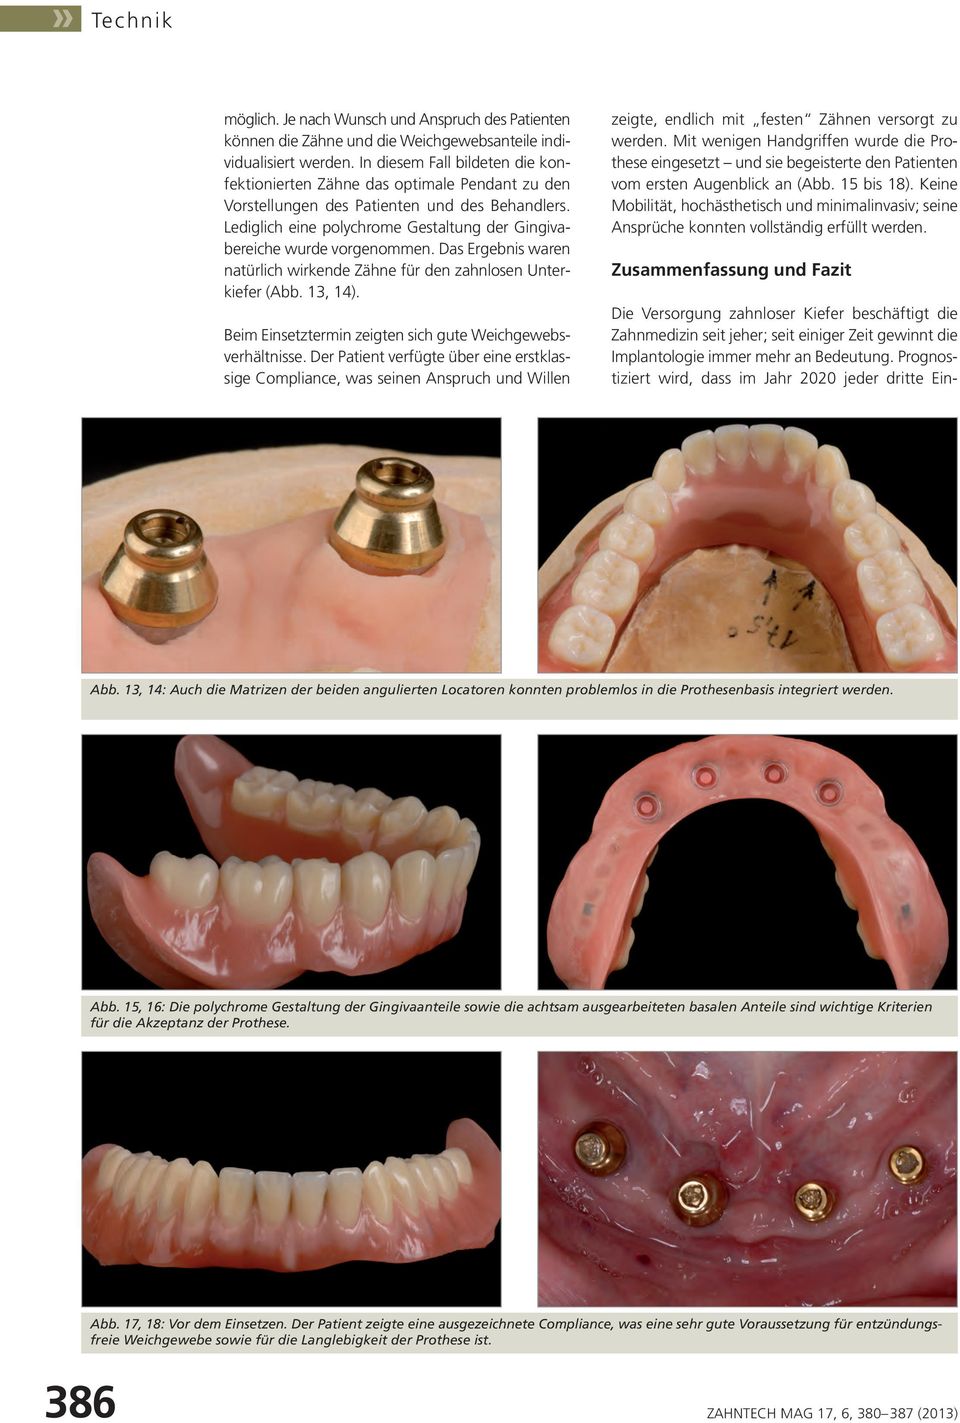 Lediglich eine polychrome Gestaltung der Gingivabereiche wurde vorgenommen. Das Ergebnis waren natürlich wirkende Zähne für den zahnlosen Unterkiefer (Abb. 13, 14).